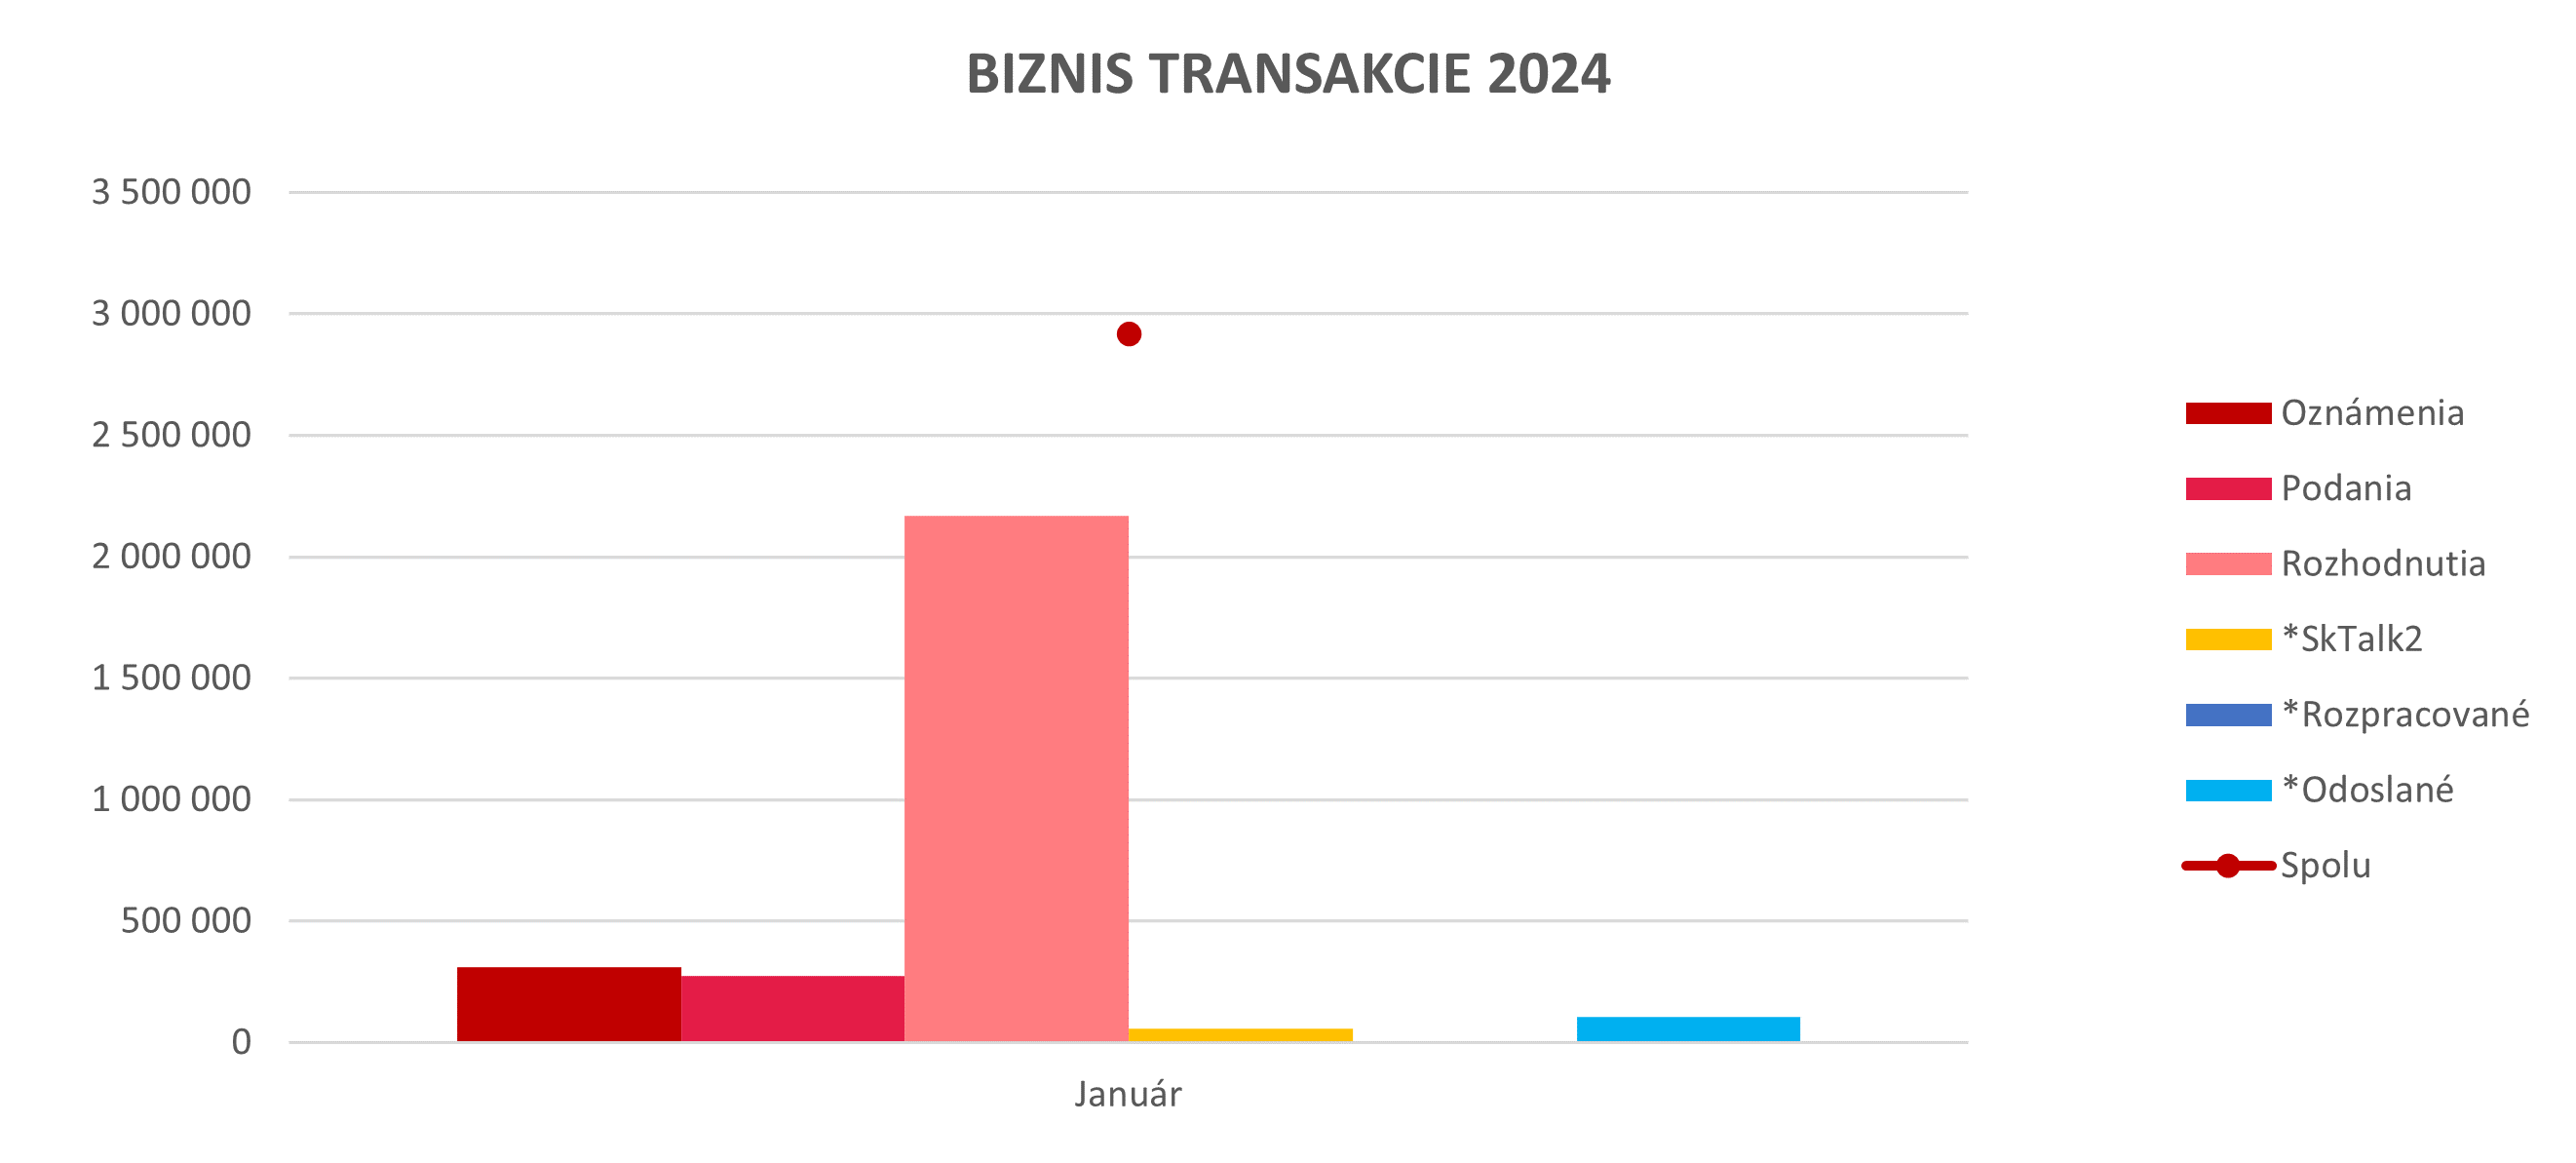 Ilustračný graf biznis transakcií za rok 2024.